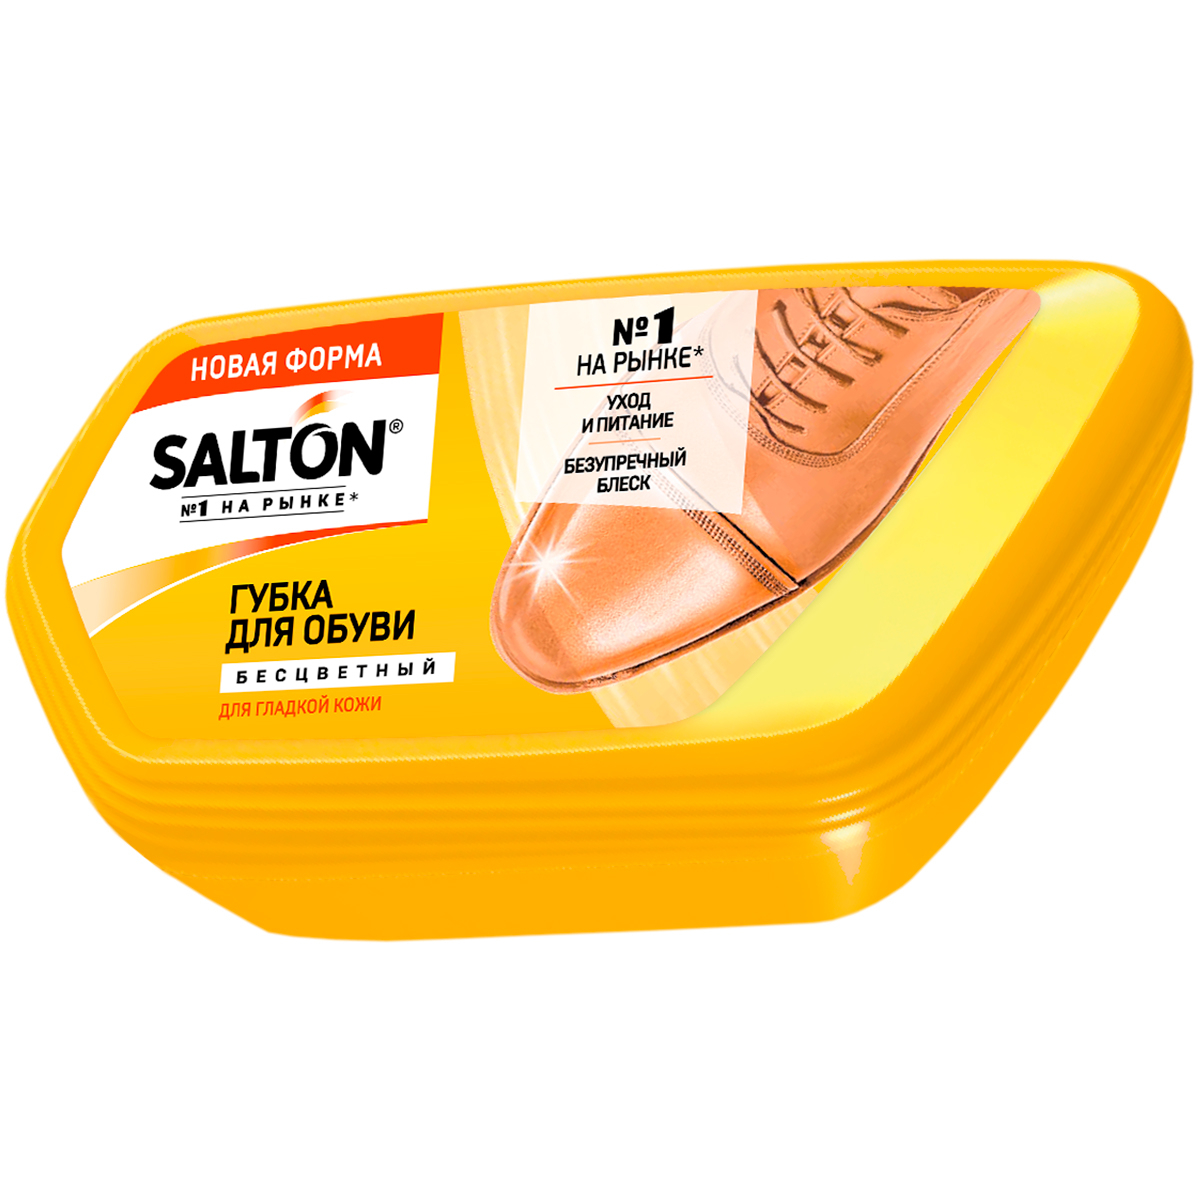 Губка-волна Salton для обуви из гладкой кожи, бесцветная salton губка аэроблеск для обуви из гладкой кожи бесцветный